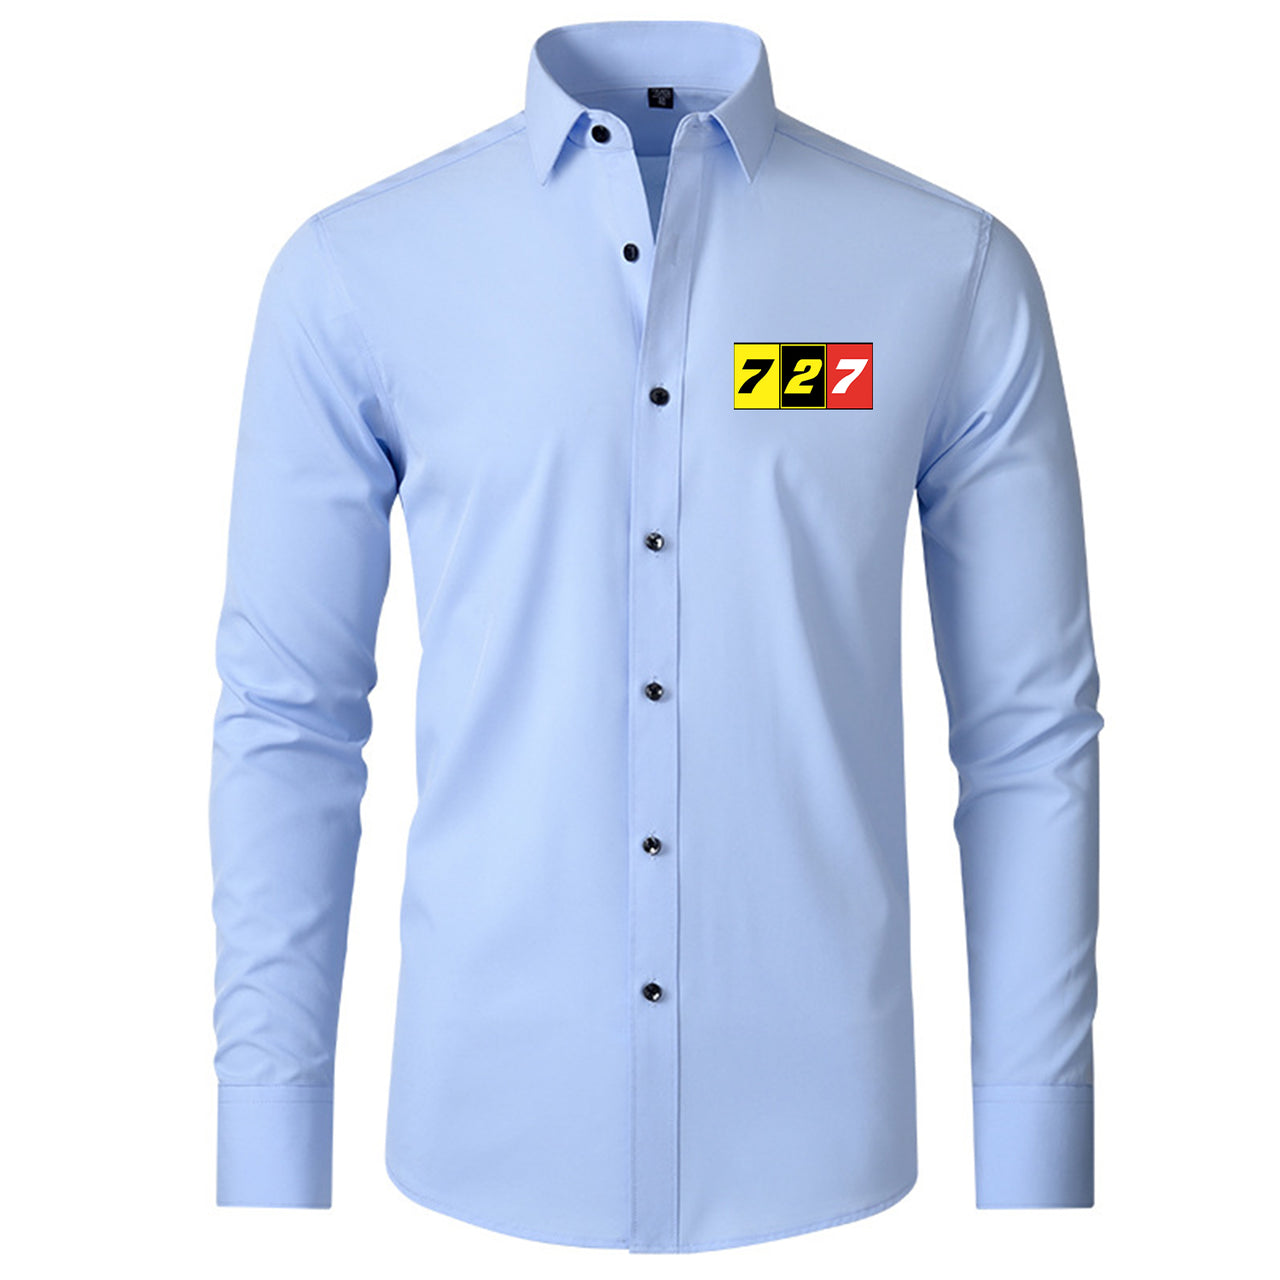 Flat Colourful 727 Designed Long Sleeve Shirts